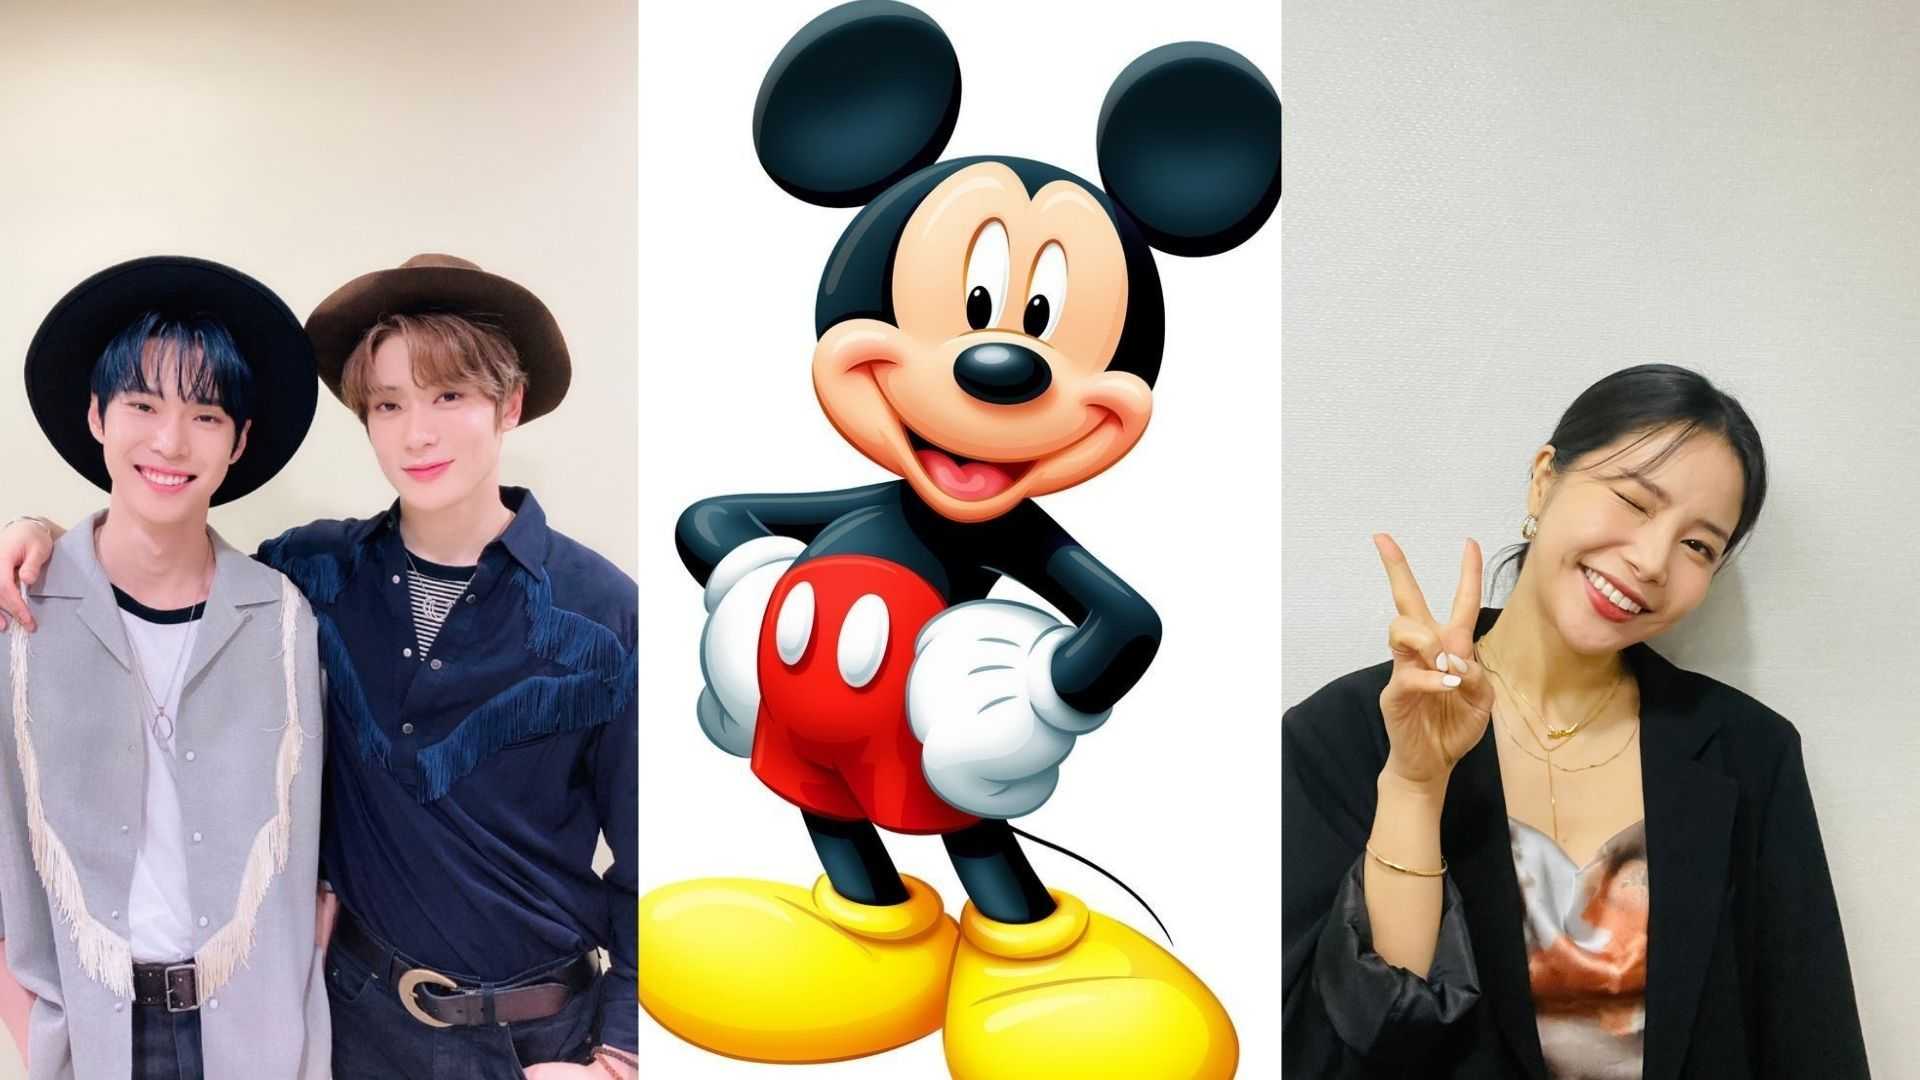 10 canciones de Disney cantadas por idols de Kpop